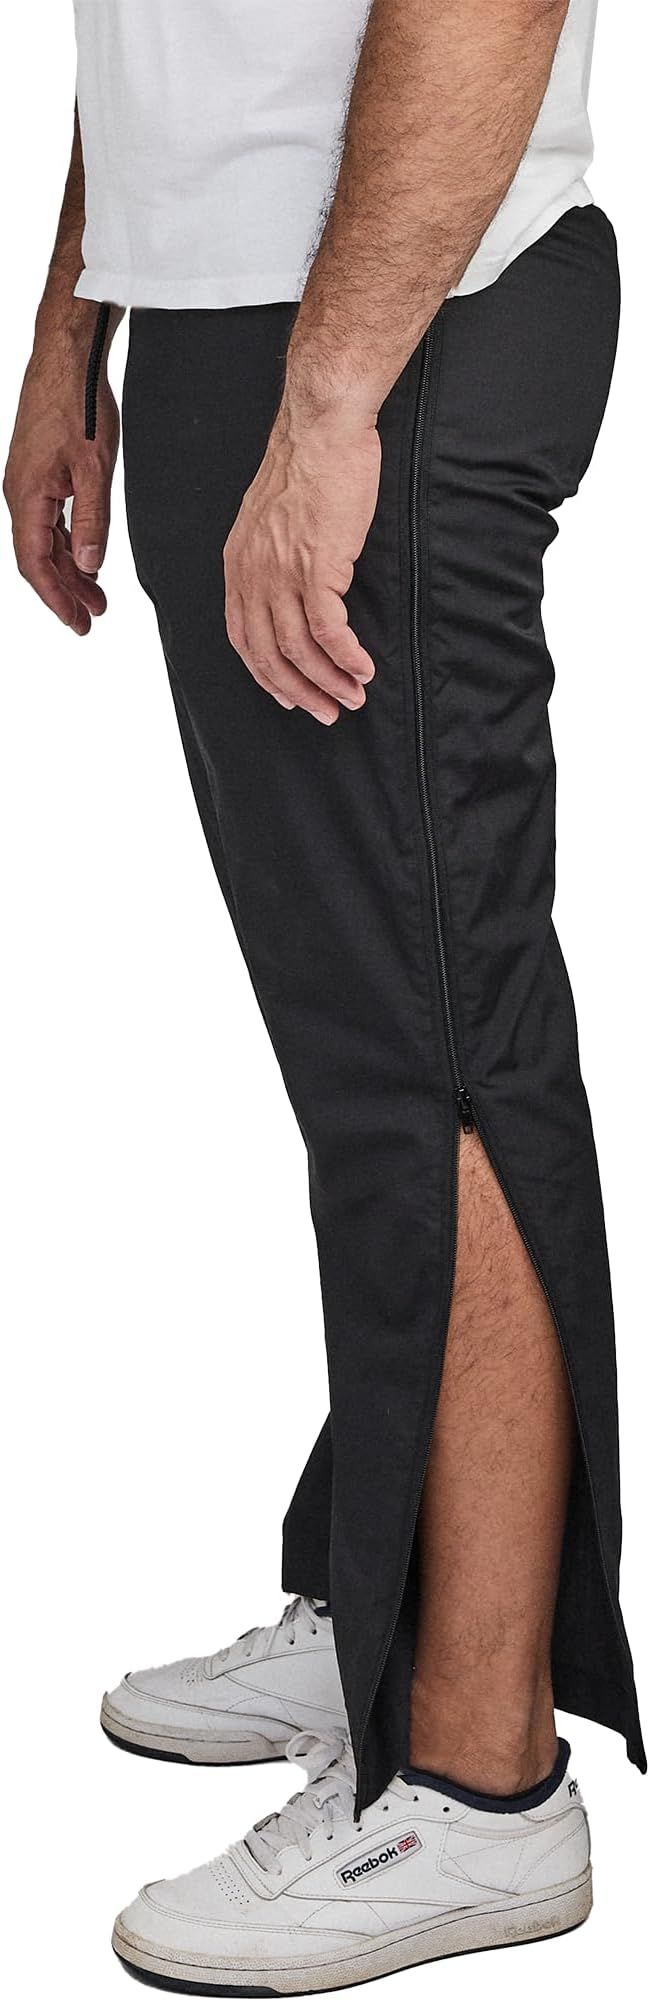 DOBSOM Reha-OP Hose Damen-Herren Sporthose mit seitlichem Reißverschluß